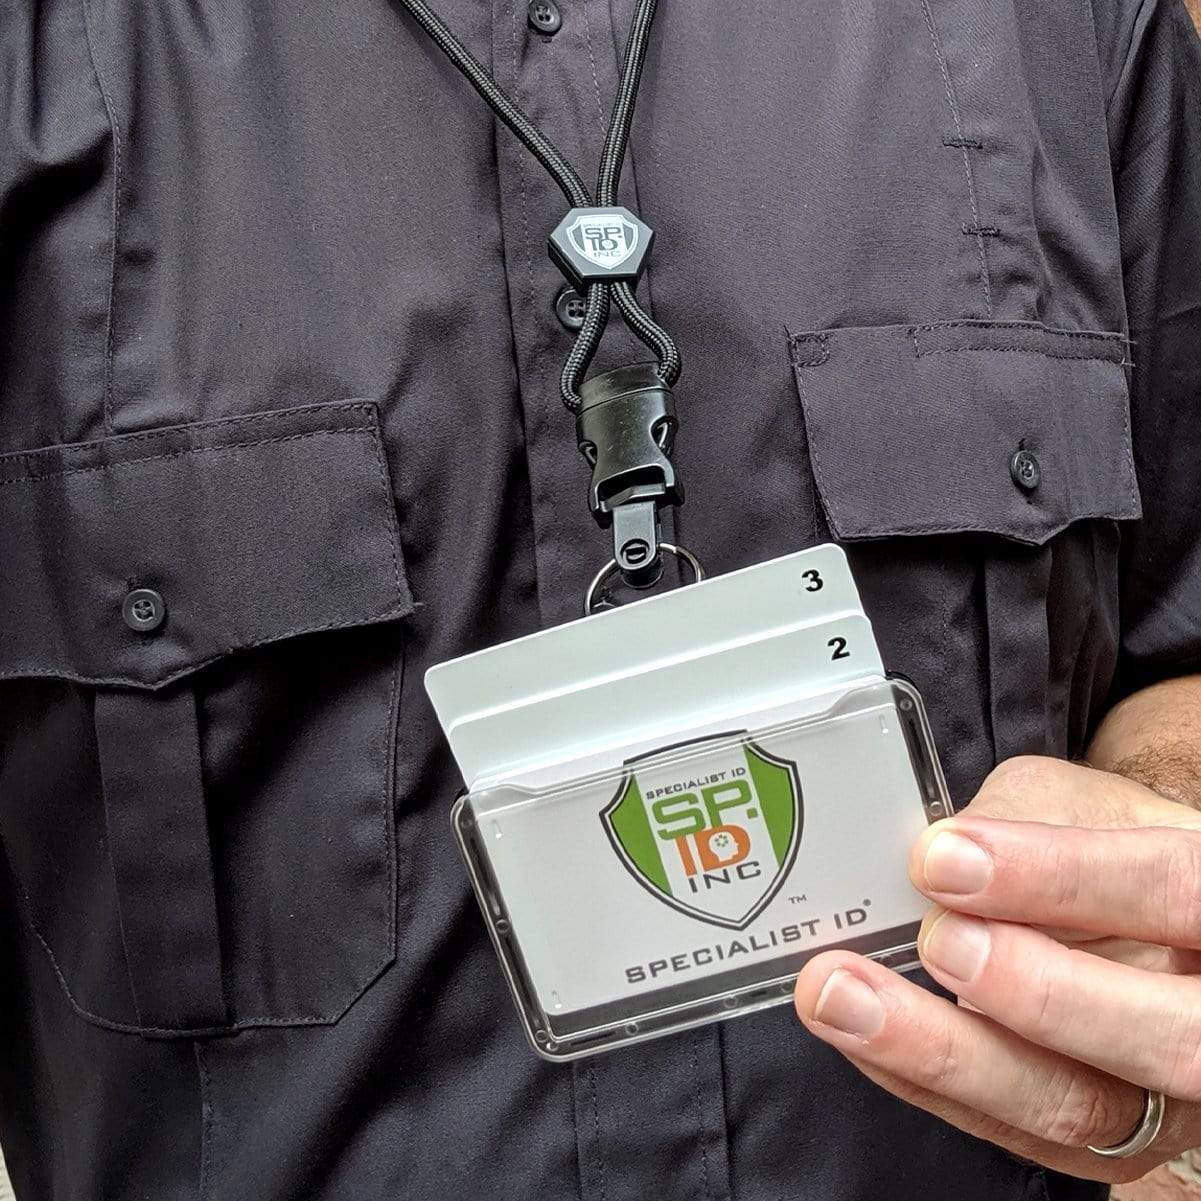  Police Badge Holder, Security Badge Holder Belt Clip